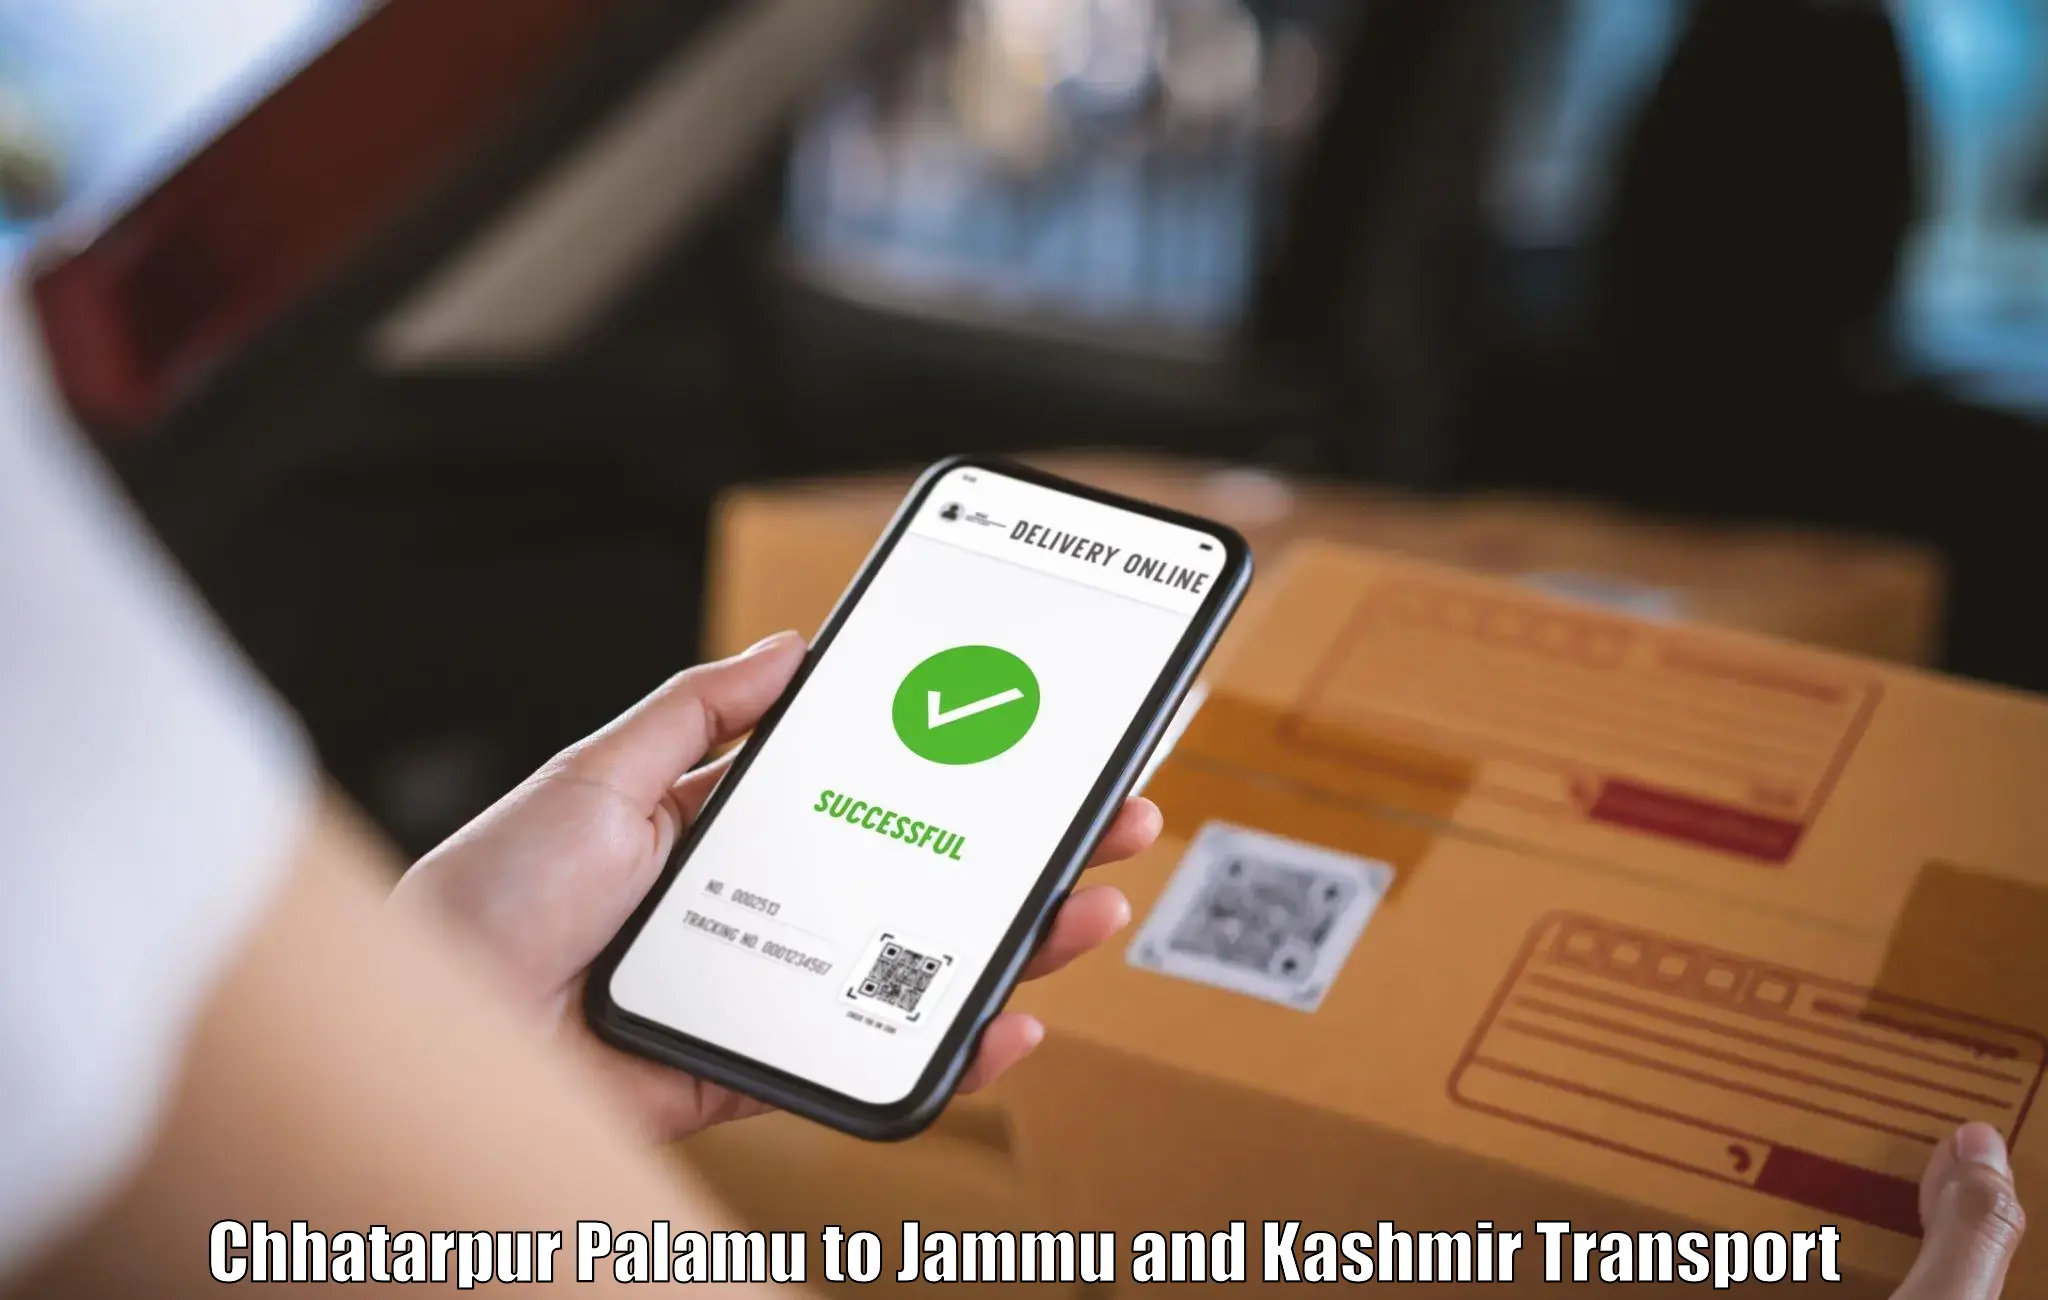 Online transport booking Chhatarpur Palamu to Kargil